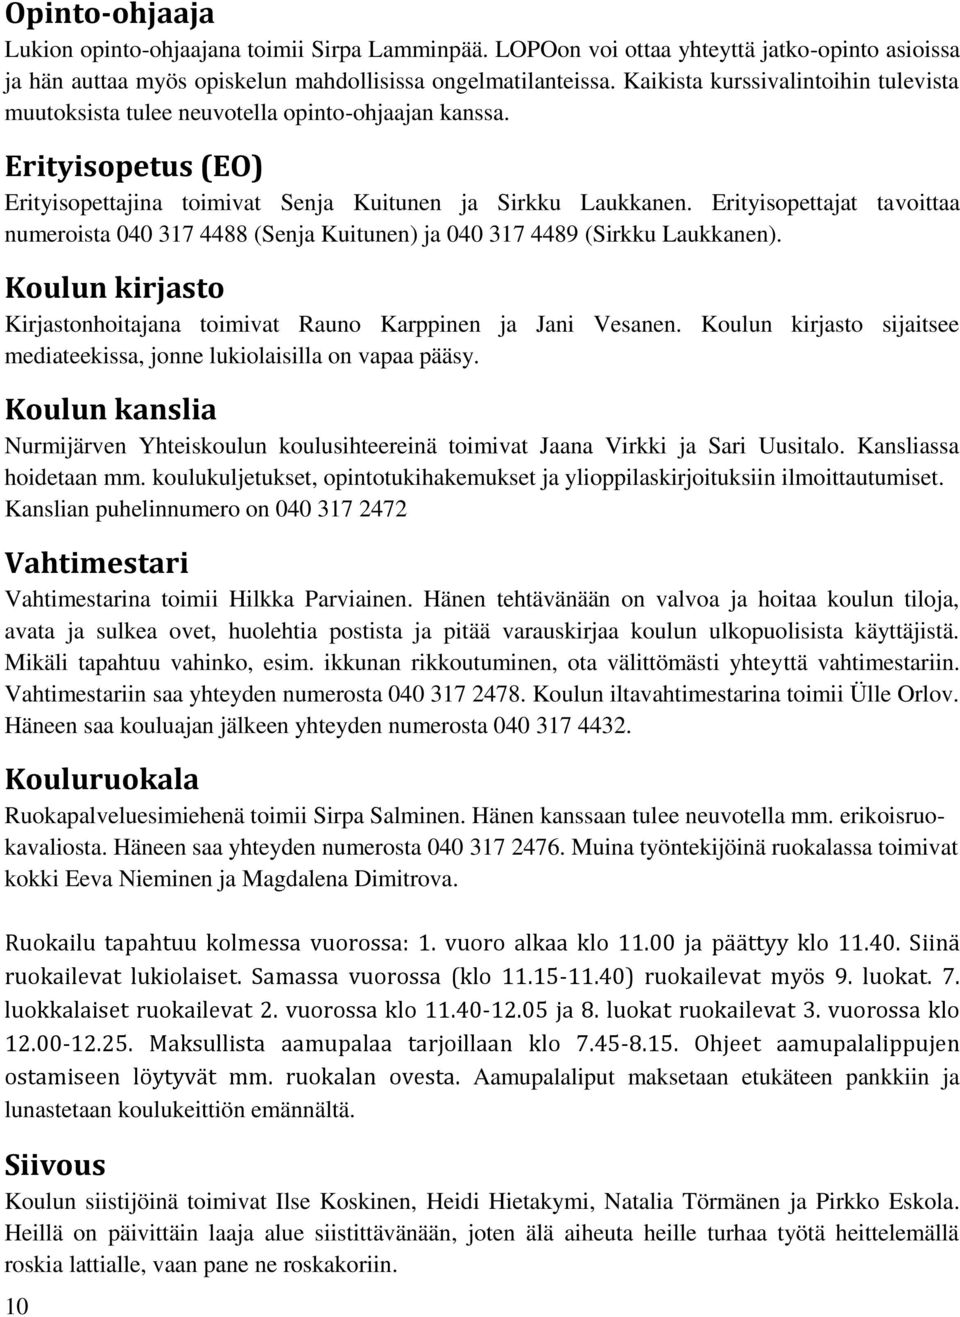 Erityisopettajat tavoittaa numeroista 040 317 4488 (Senja Kuitunen) ja 040 317 4489 (Sirkku Laukkanen). Koulun kirjasto Kirjastonhoitajana toimivat Rauno Karppinen ja Jani Vesanen.